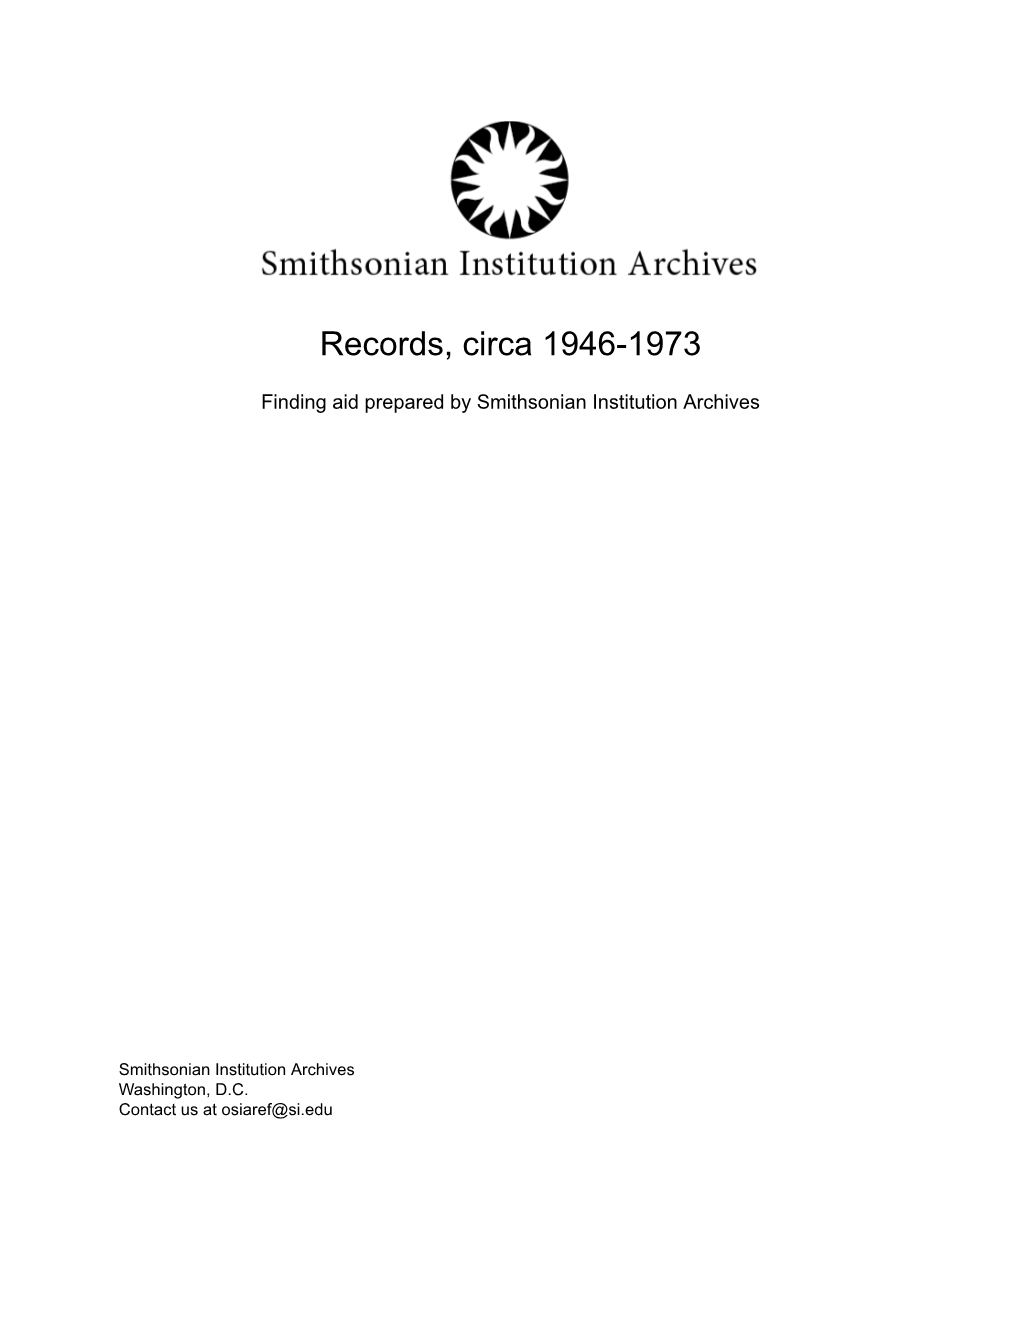 Records, Circa 1946-1973